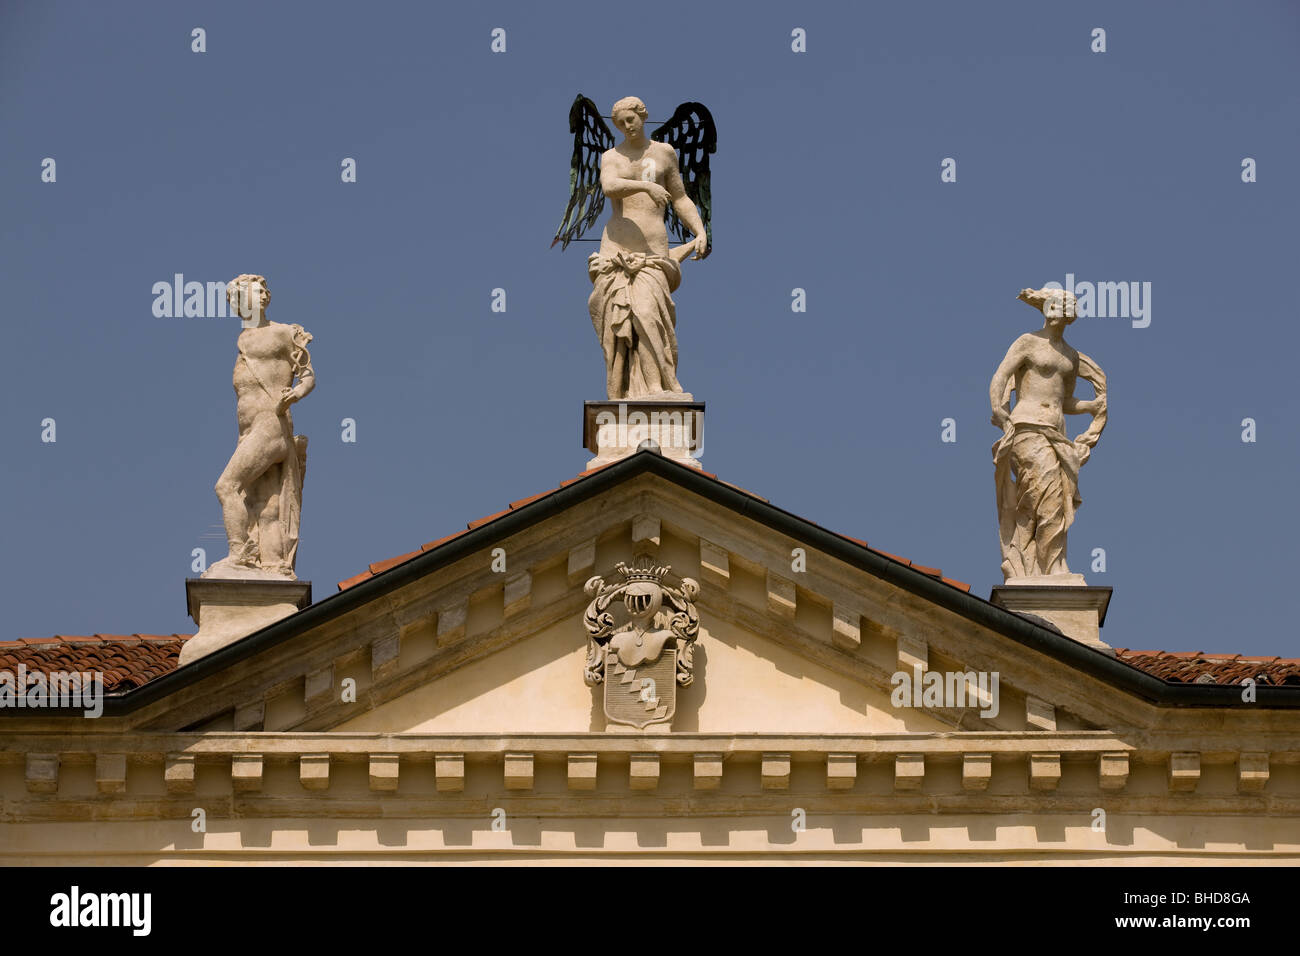 L'Europe, Italie, Vénétie, Vicence, Villa Valmarana ai Nani, Andrea Palladio, statues, de l'architecture, de l'histoire. Banque D'Images